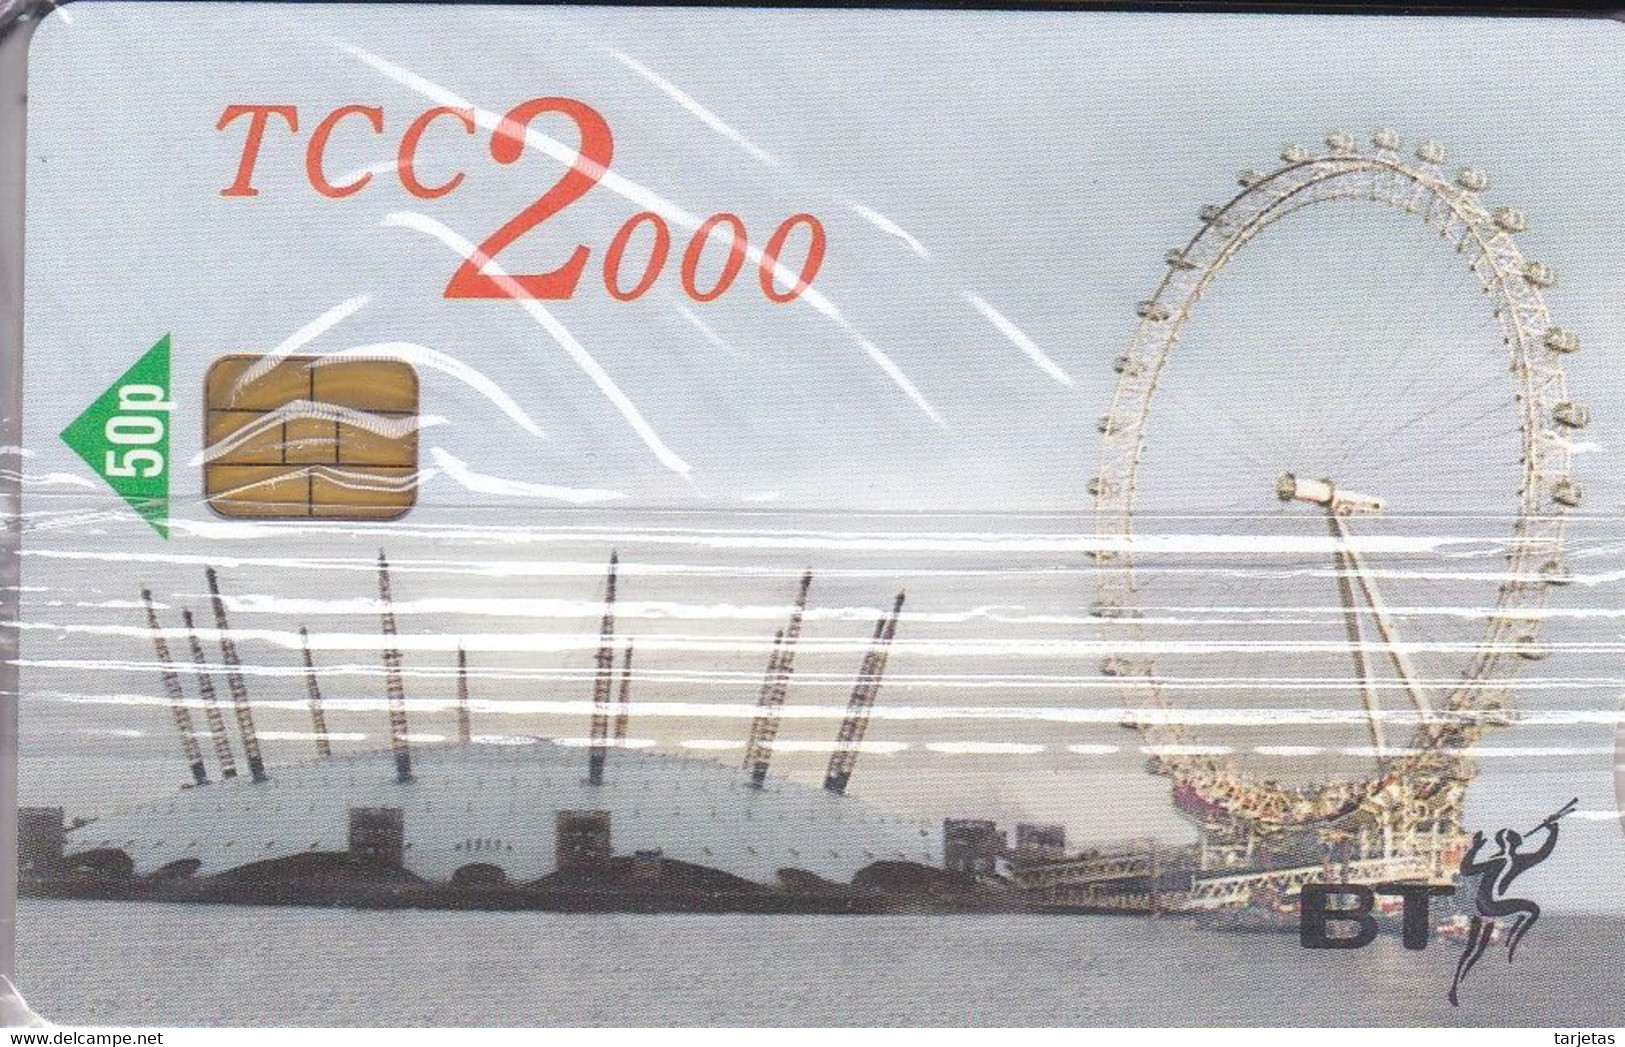 TARJETA DEL REINO UNIDO DE BT TCC 2000 (NUEVA-MINT) NORIA DE LONDRES - BT Promotional